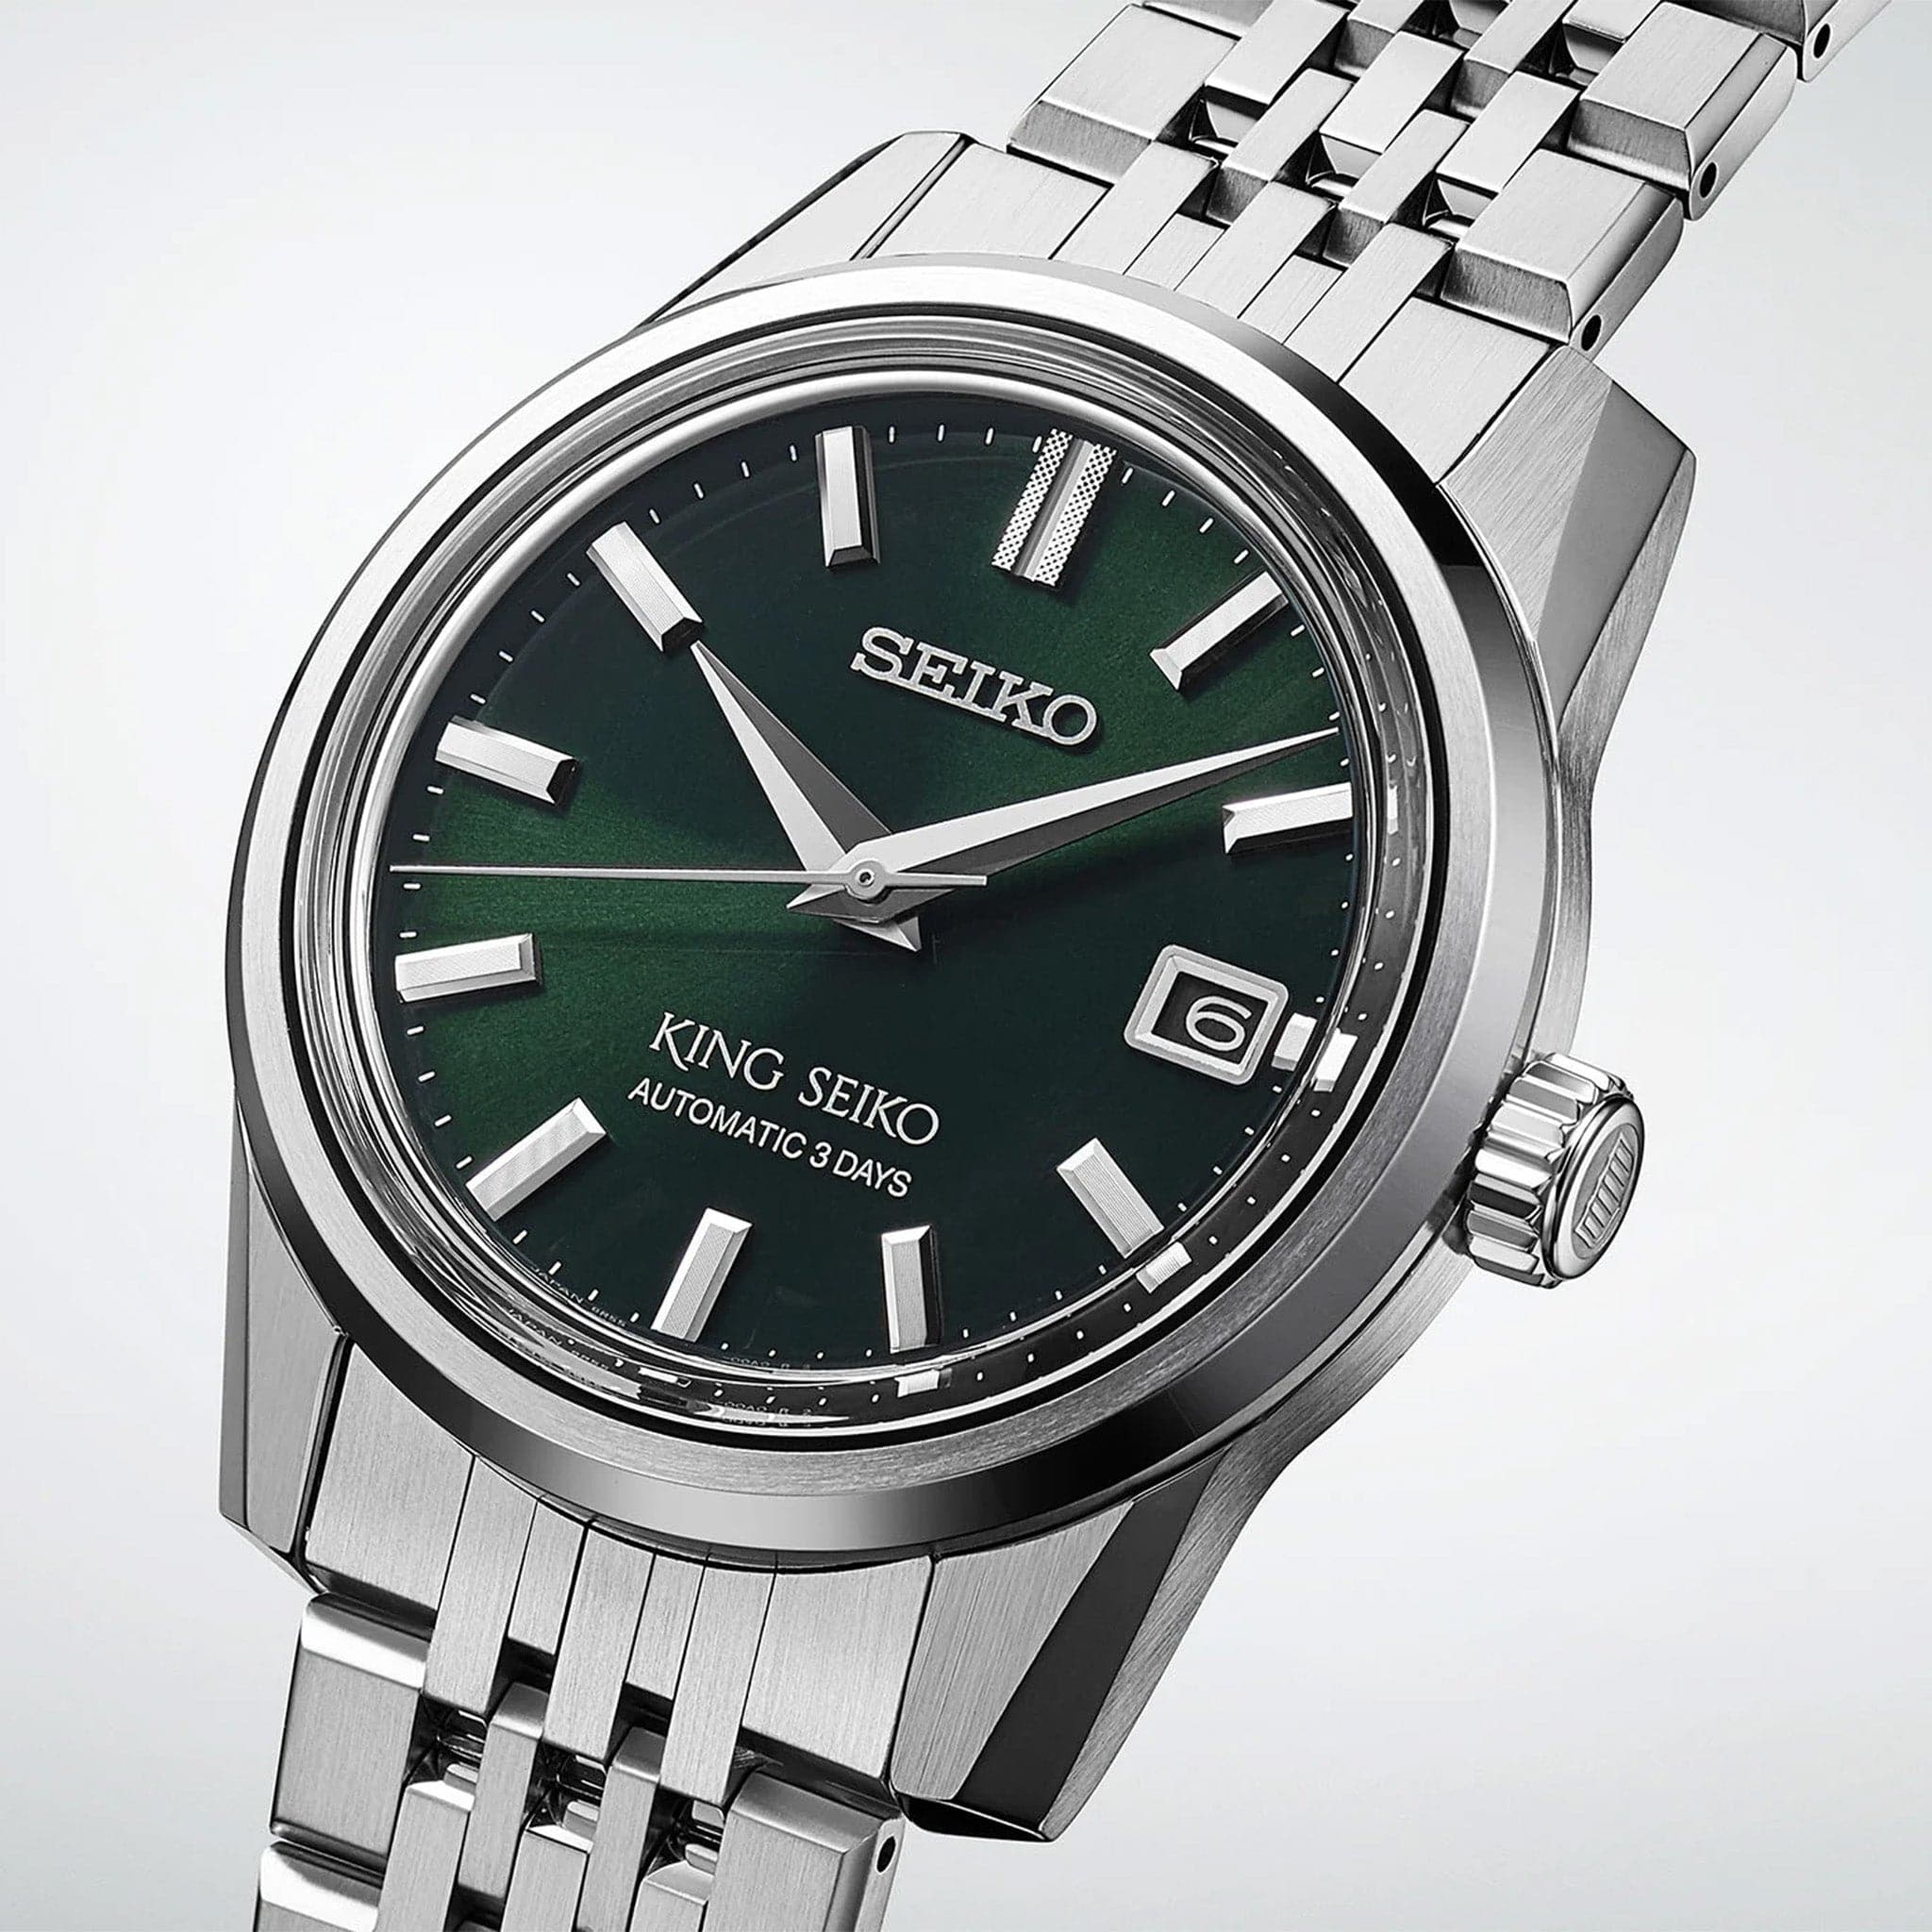 Seiko SPB373 King Seiko 39mm Green Dial Automatic Watch